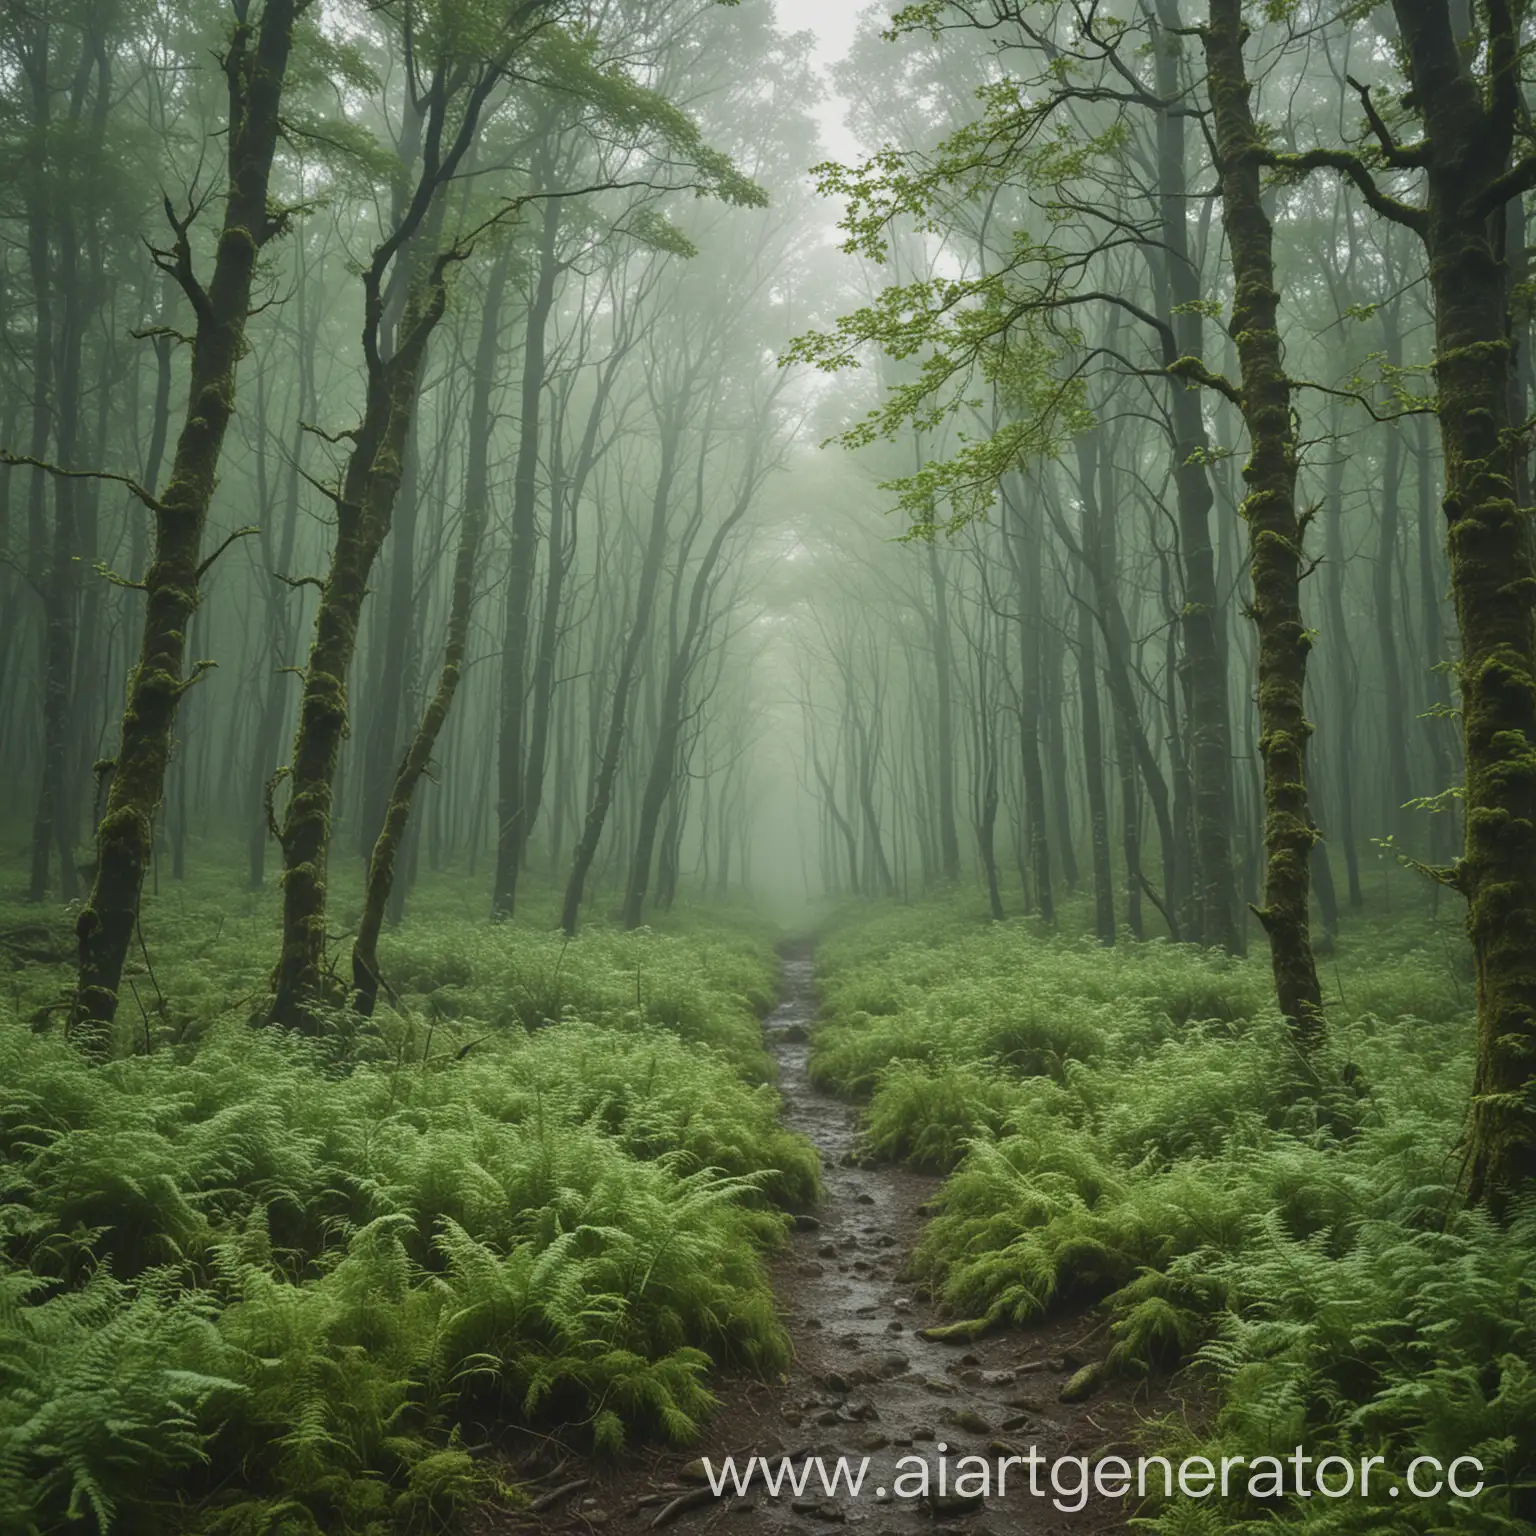 нарисованный зеленый лес, май, гроза, туманность, тревожность